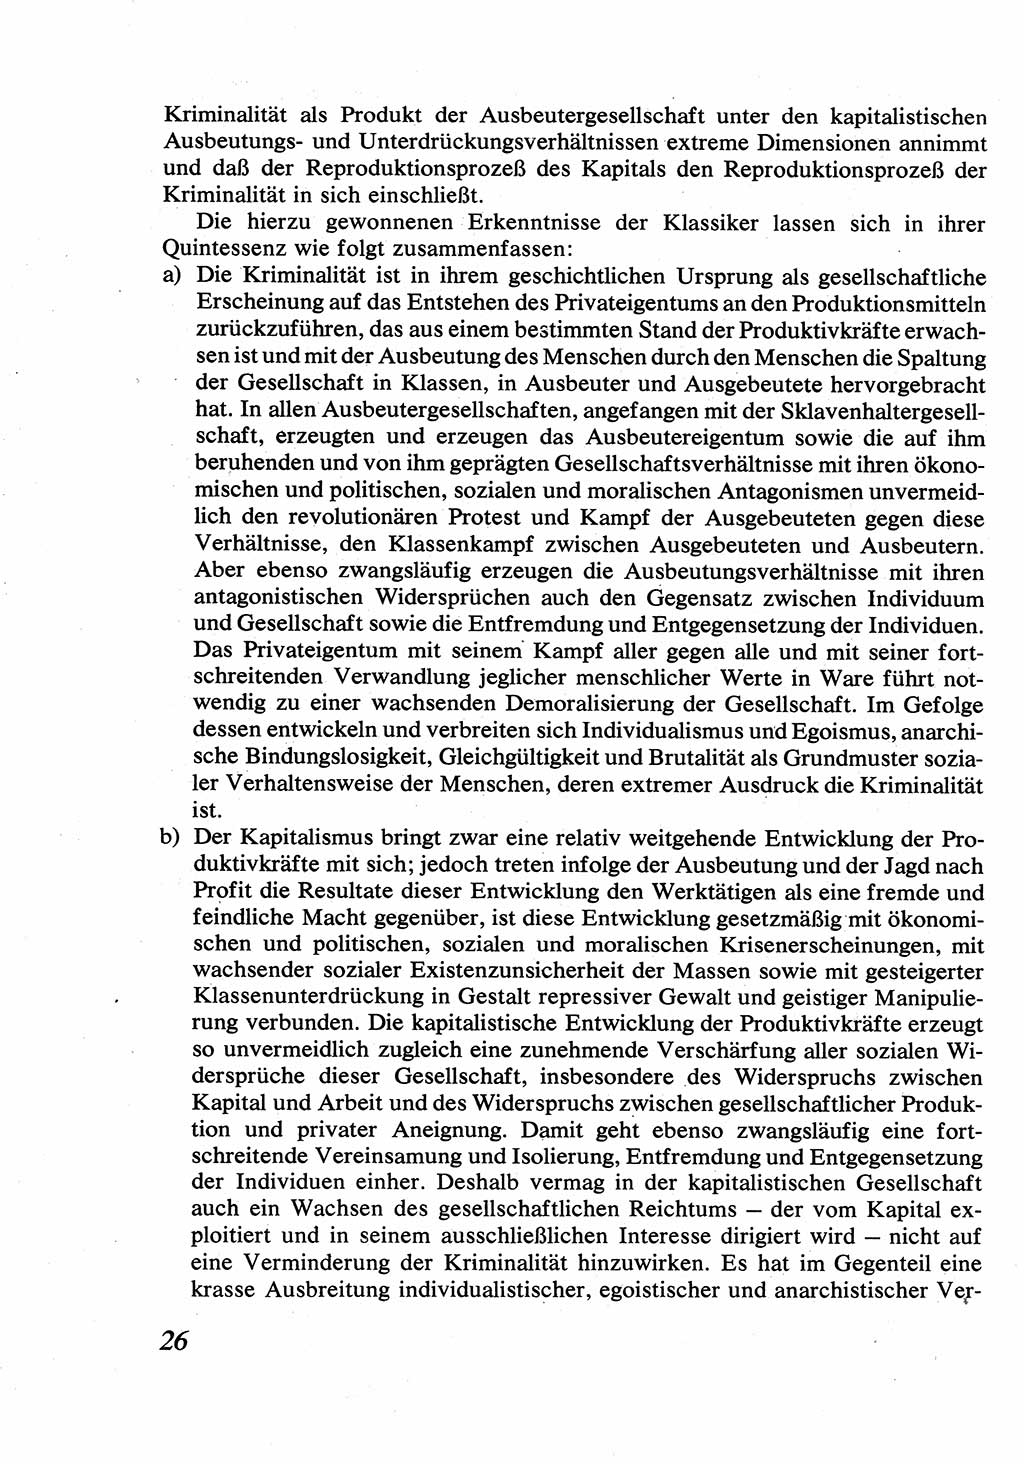 Strafrecht [Deutsche Demokratische Republik (DDR)], Allgemeiner Teil, Lehrbuch 1976, Seite 26 (Strafr. DDR AT Lb. 1976, S. 26)